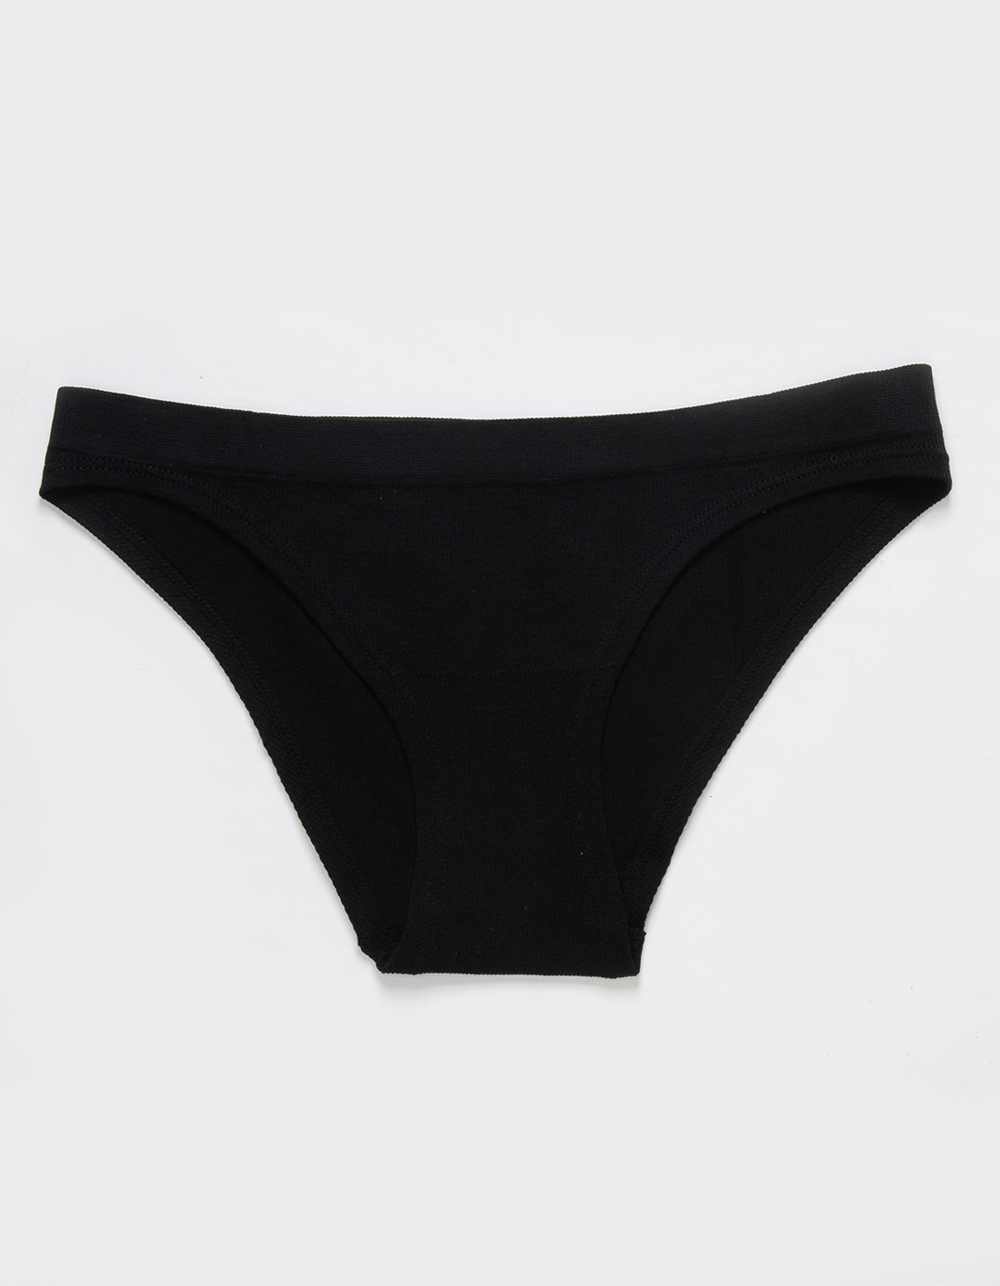 SKY & SPARROW Seamless Bikini Panties - BLACK